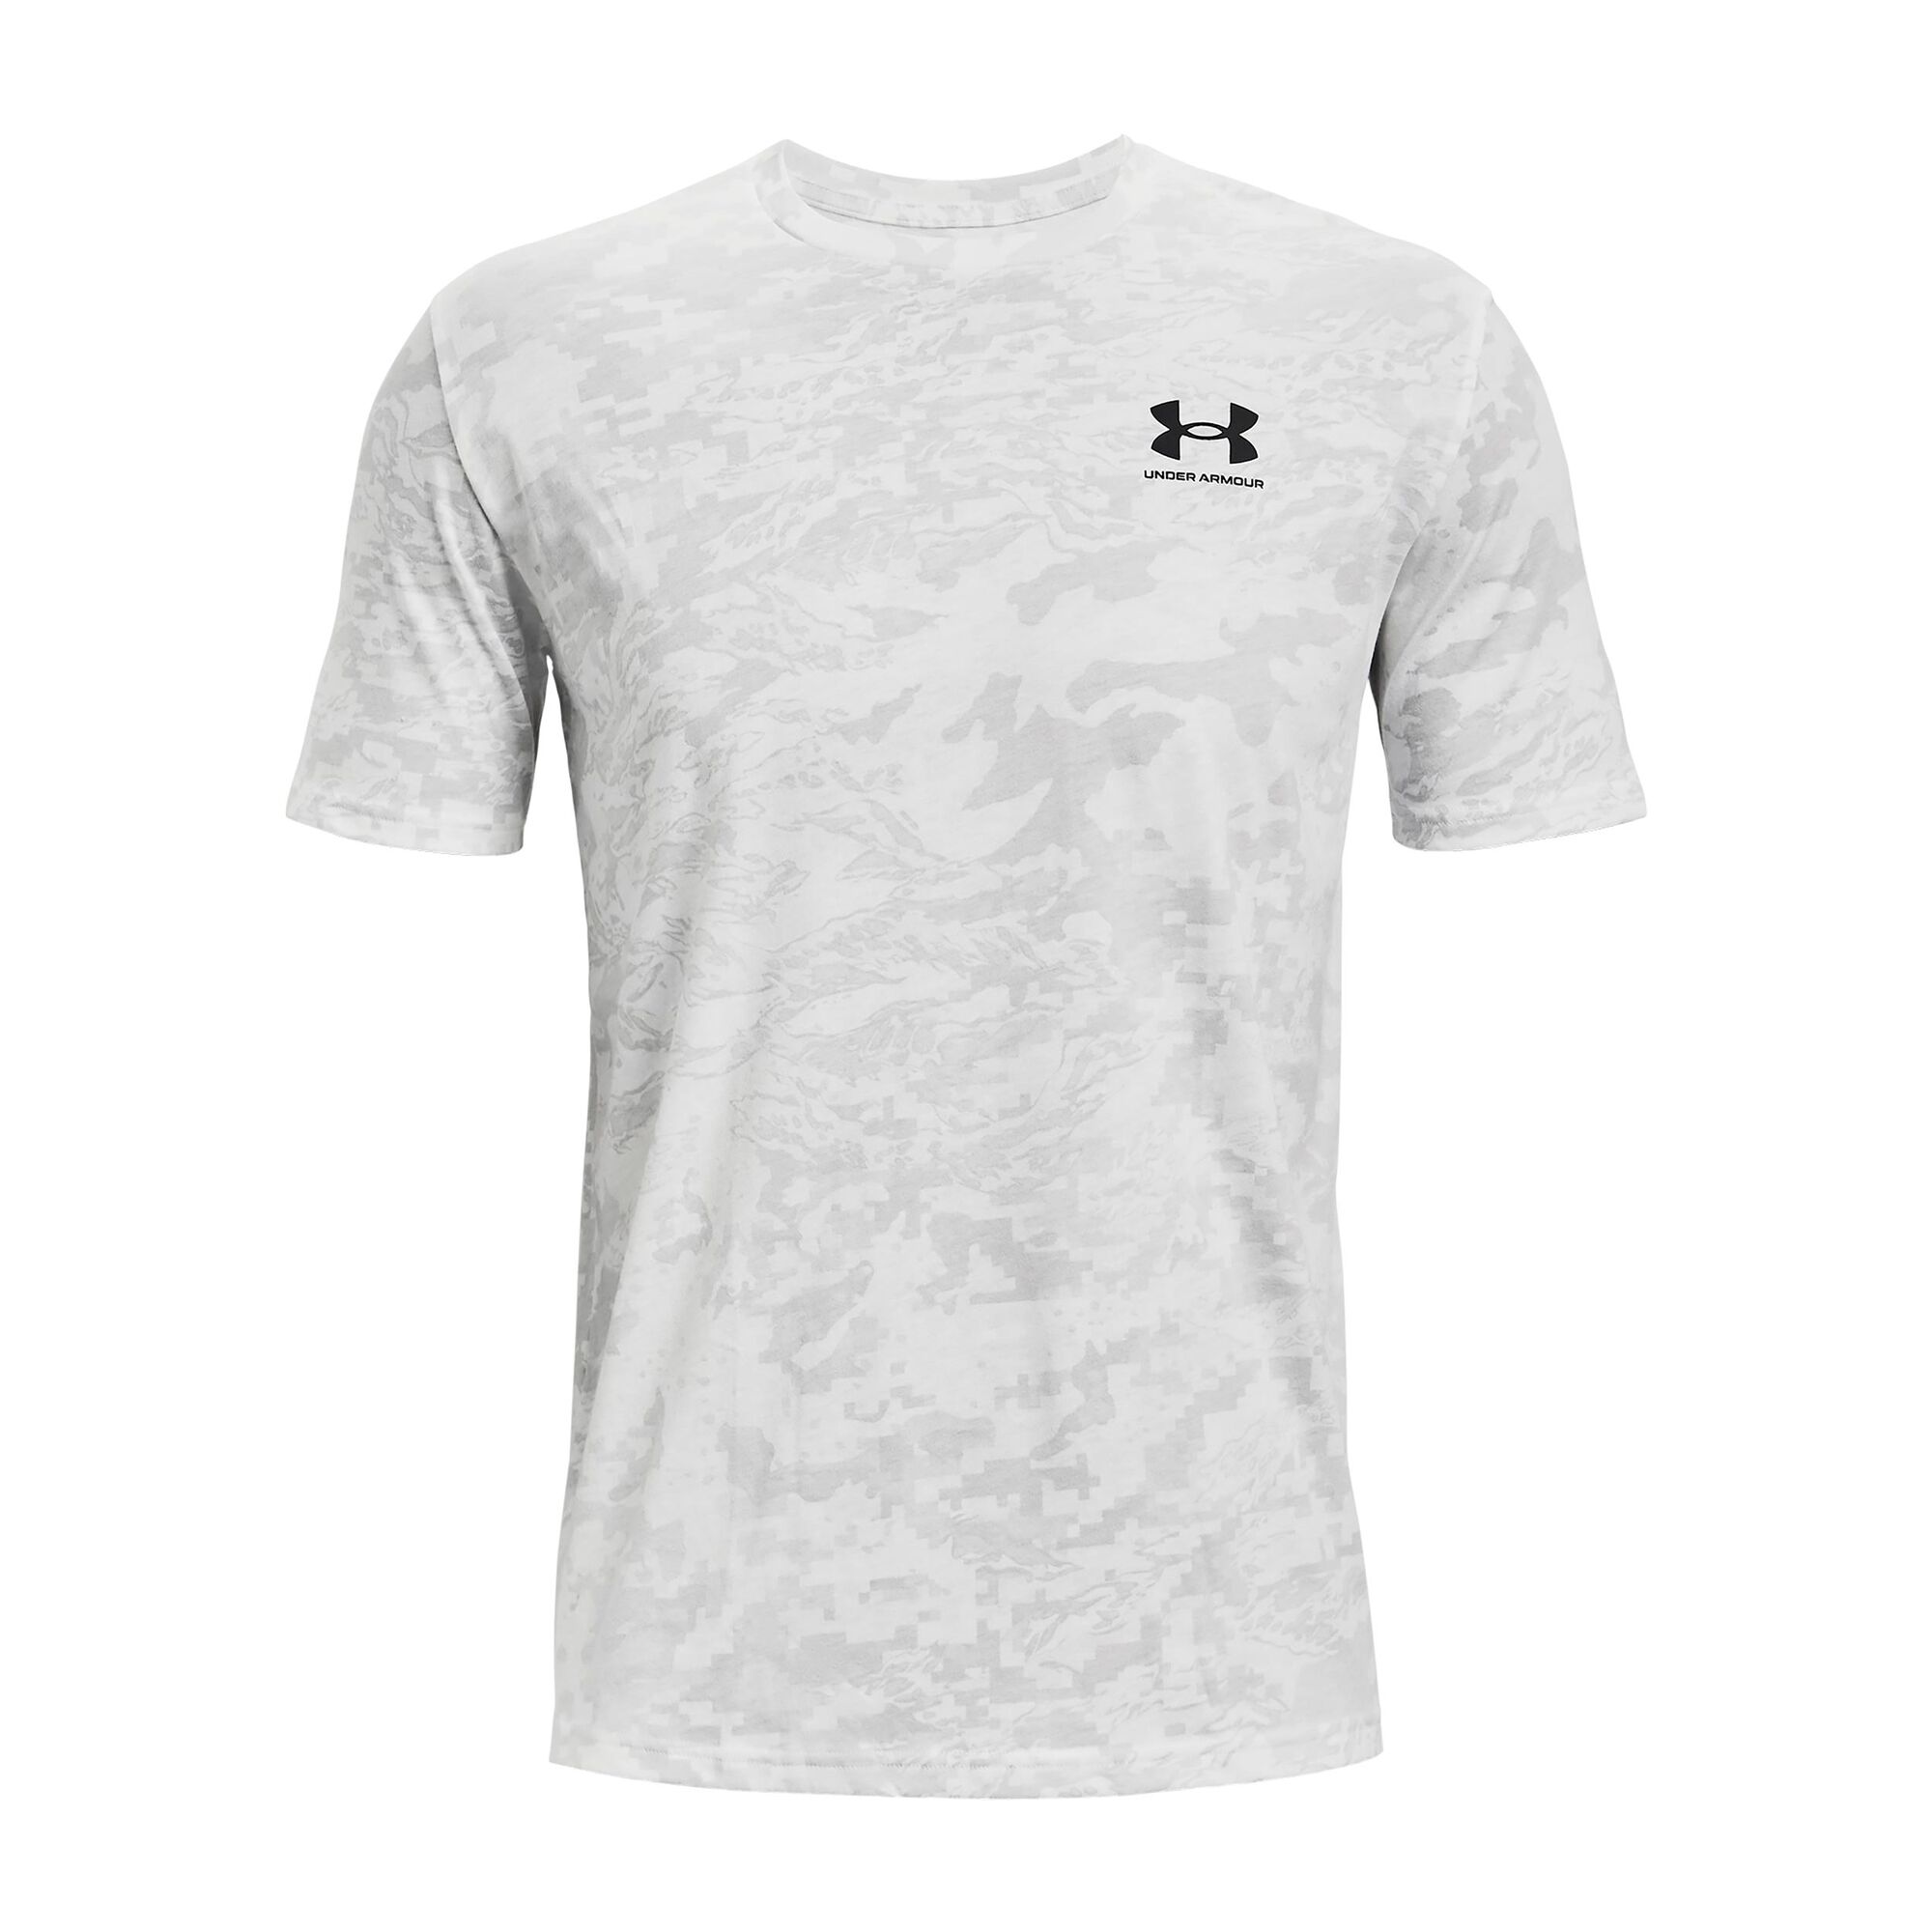 Buy Under Armour ABC Camo T-Shirt Men White online